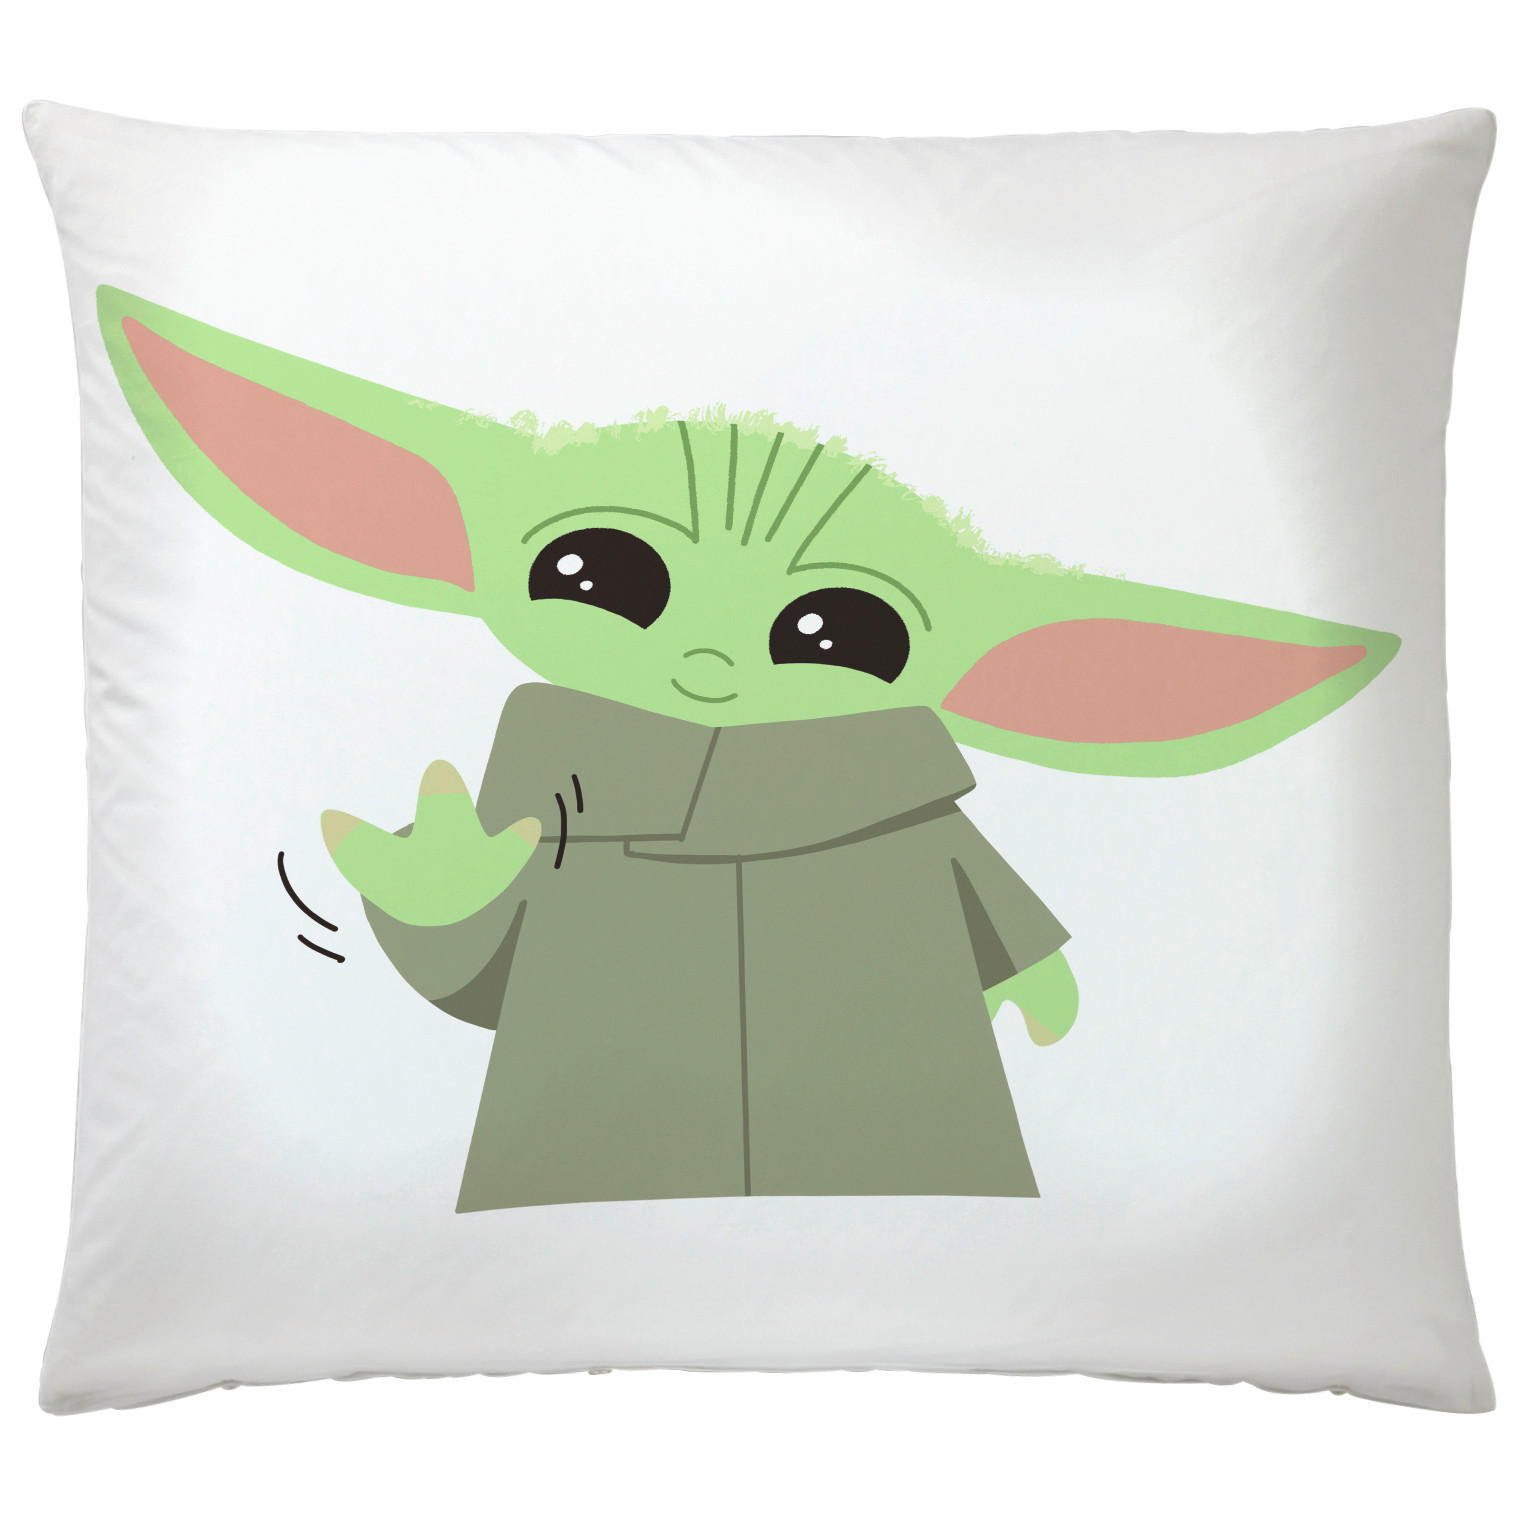 ZIERKISSEN Star Wars Yoda 40/40 cm  - Creme, Basics, Textil (40/40cm) - Disney